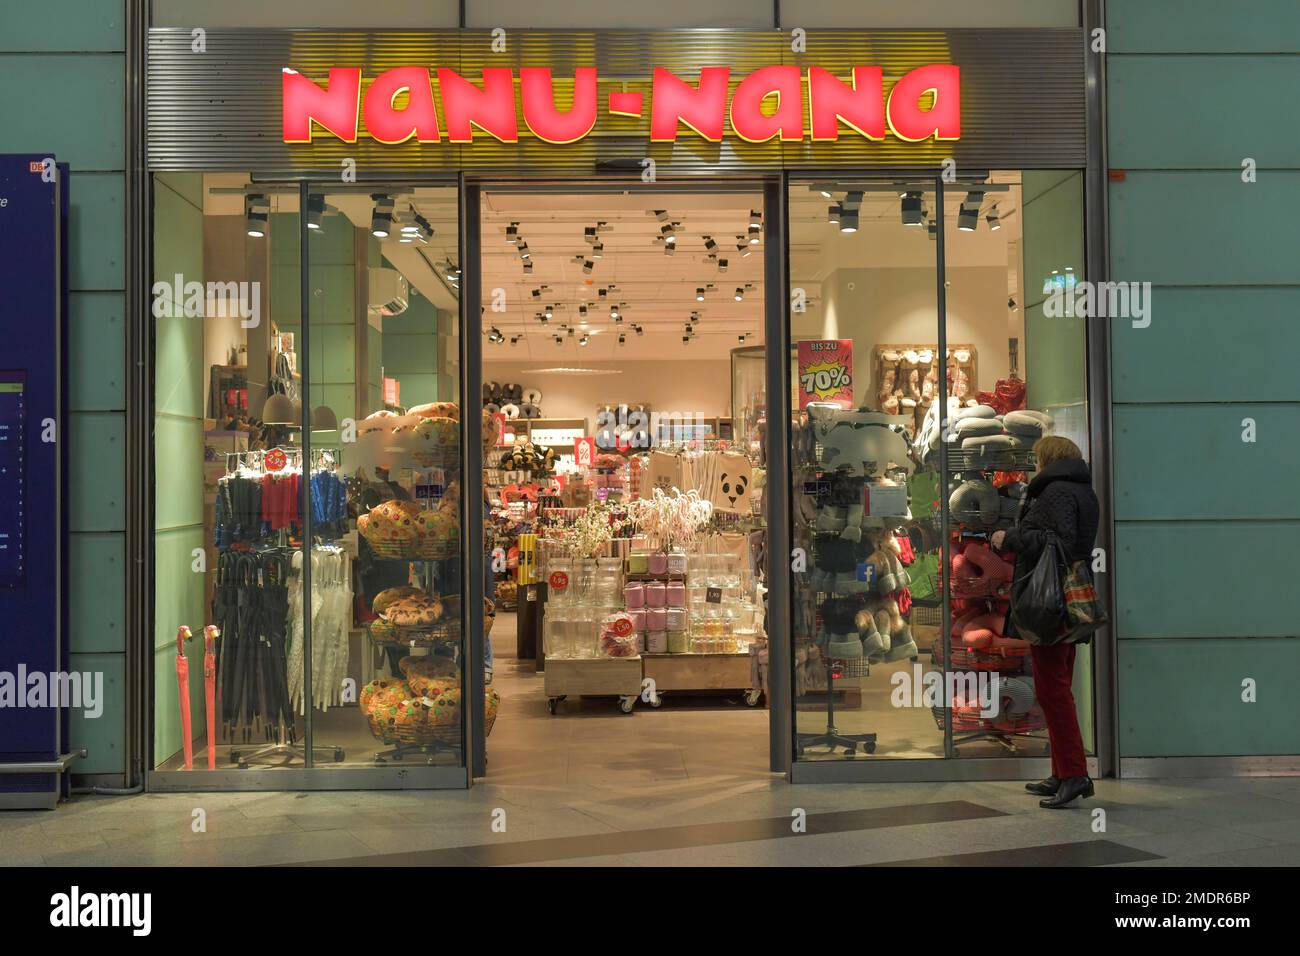 Nanu Nana, Shopfront at Friedrichstrasse Station, Mitte, Berlin, Germany Stock Photo